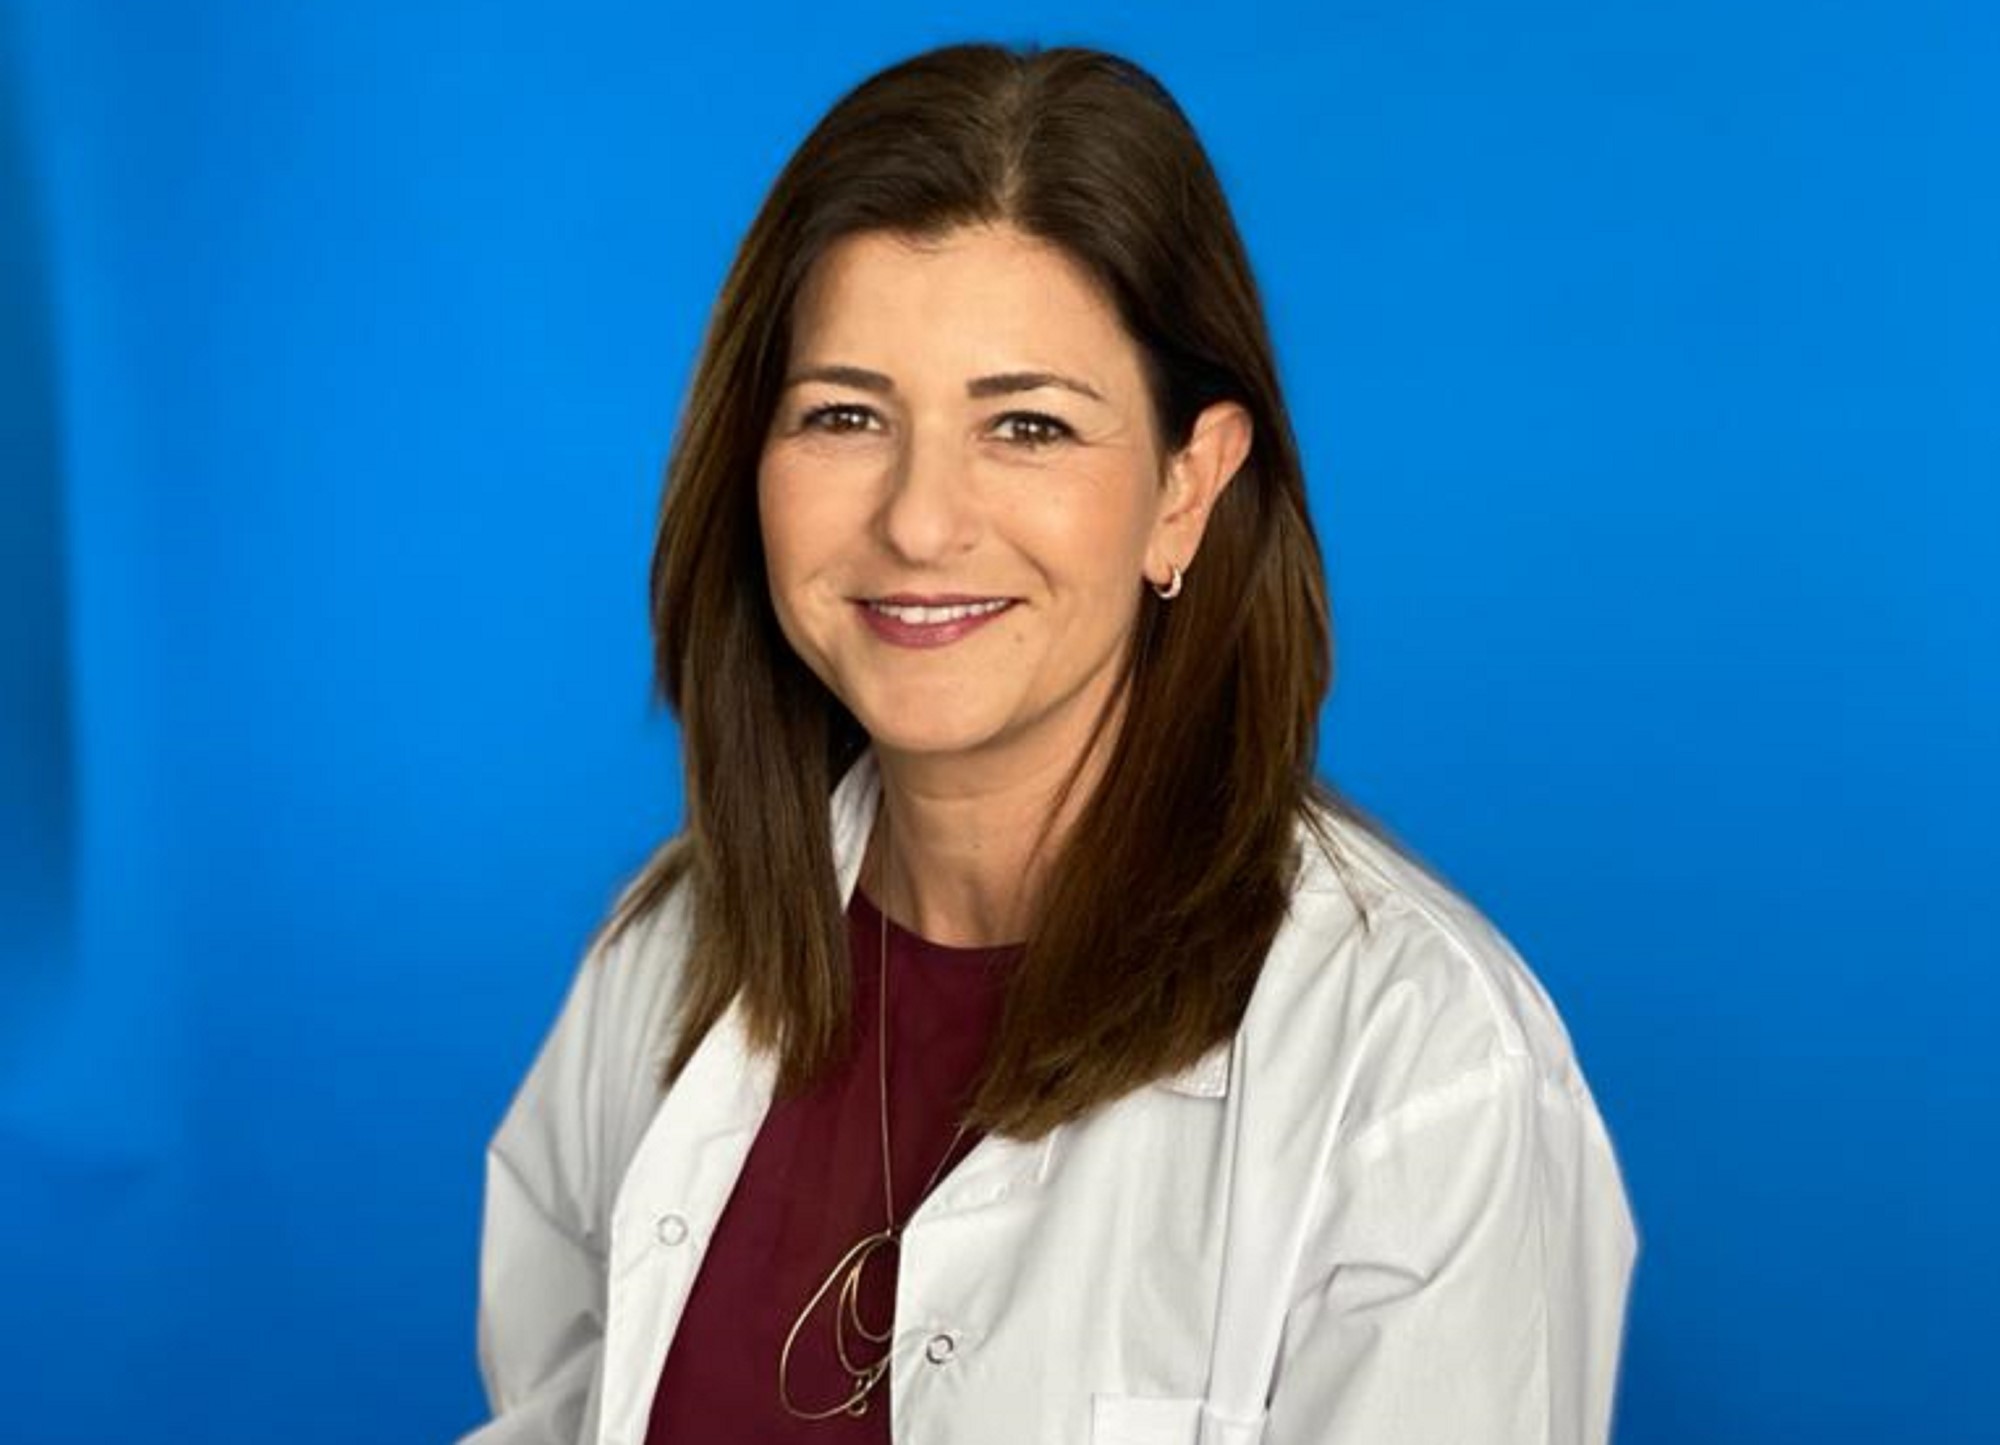 מינוי חדש במכבי:  ד"ר אורלי גרינפלד מונתה לרופאה מחוזית  במחוז המרכז במכבי שרותי בריאות